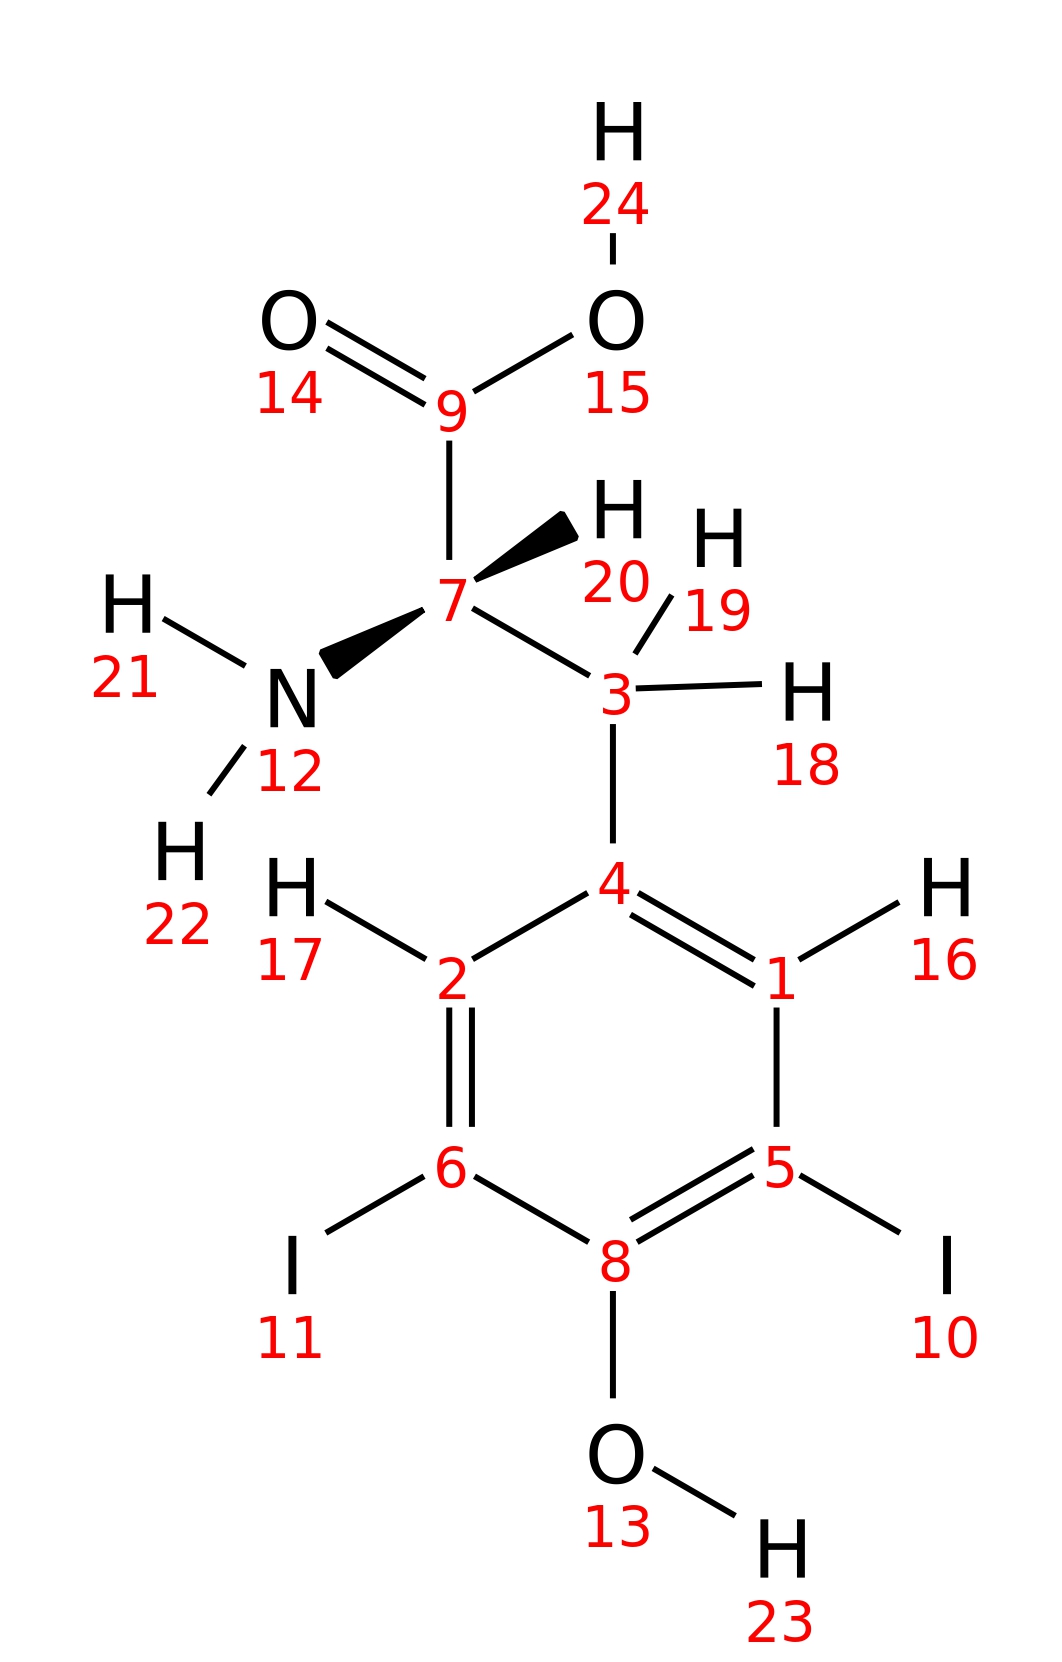 InChI=1S/C9H9I2NO3/c10-5-1-4(2-6(11)8(5)13)3-7(12)9(14)15/h1-2,7,13H,3,12H2,(H,14,15)/t7-/m0/s1